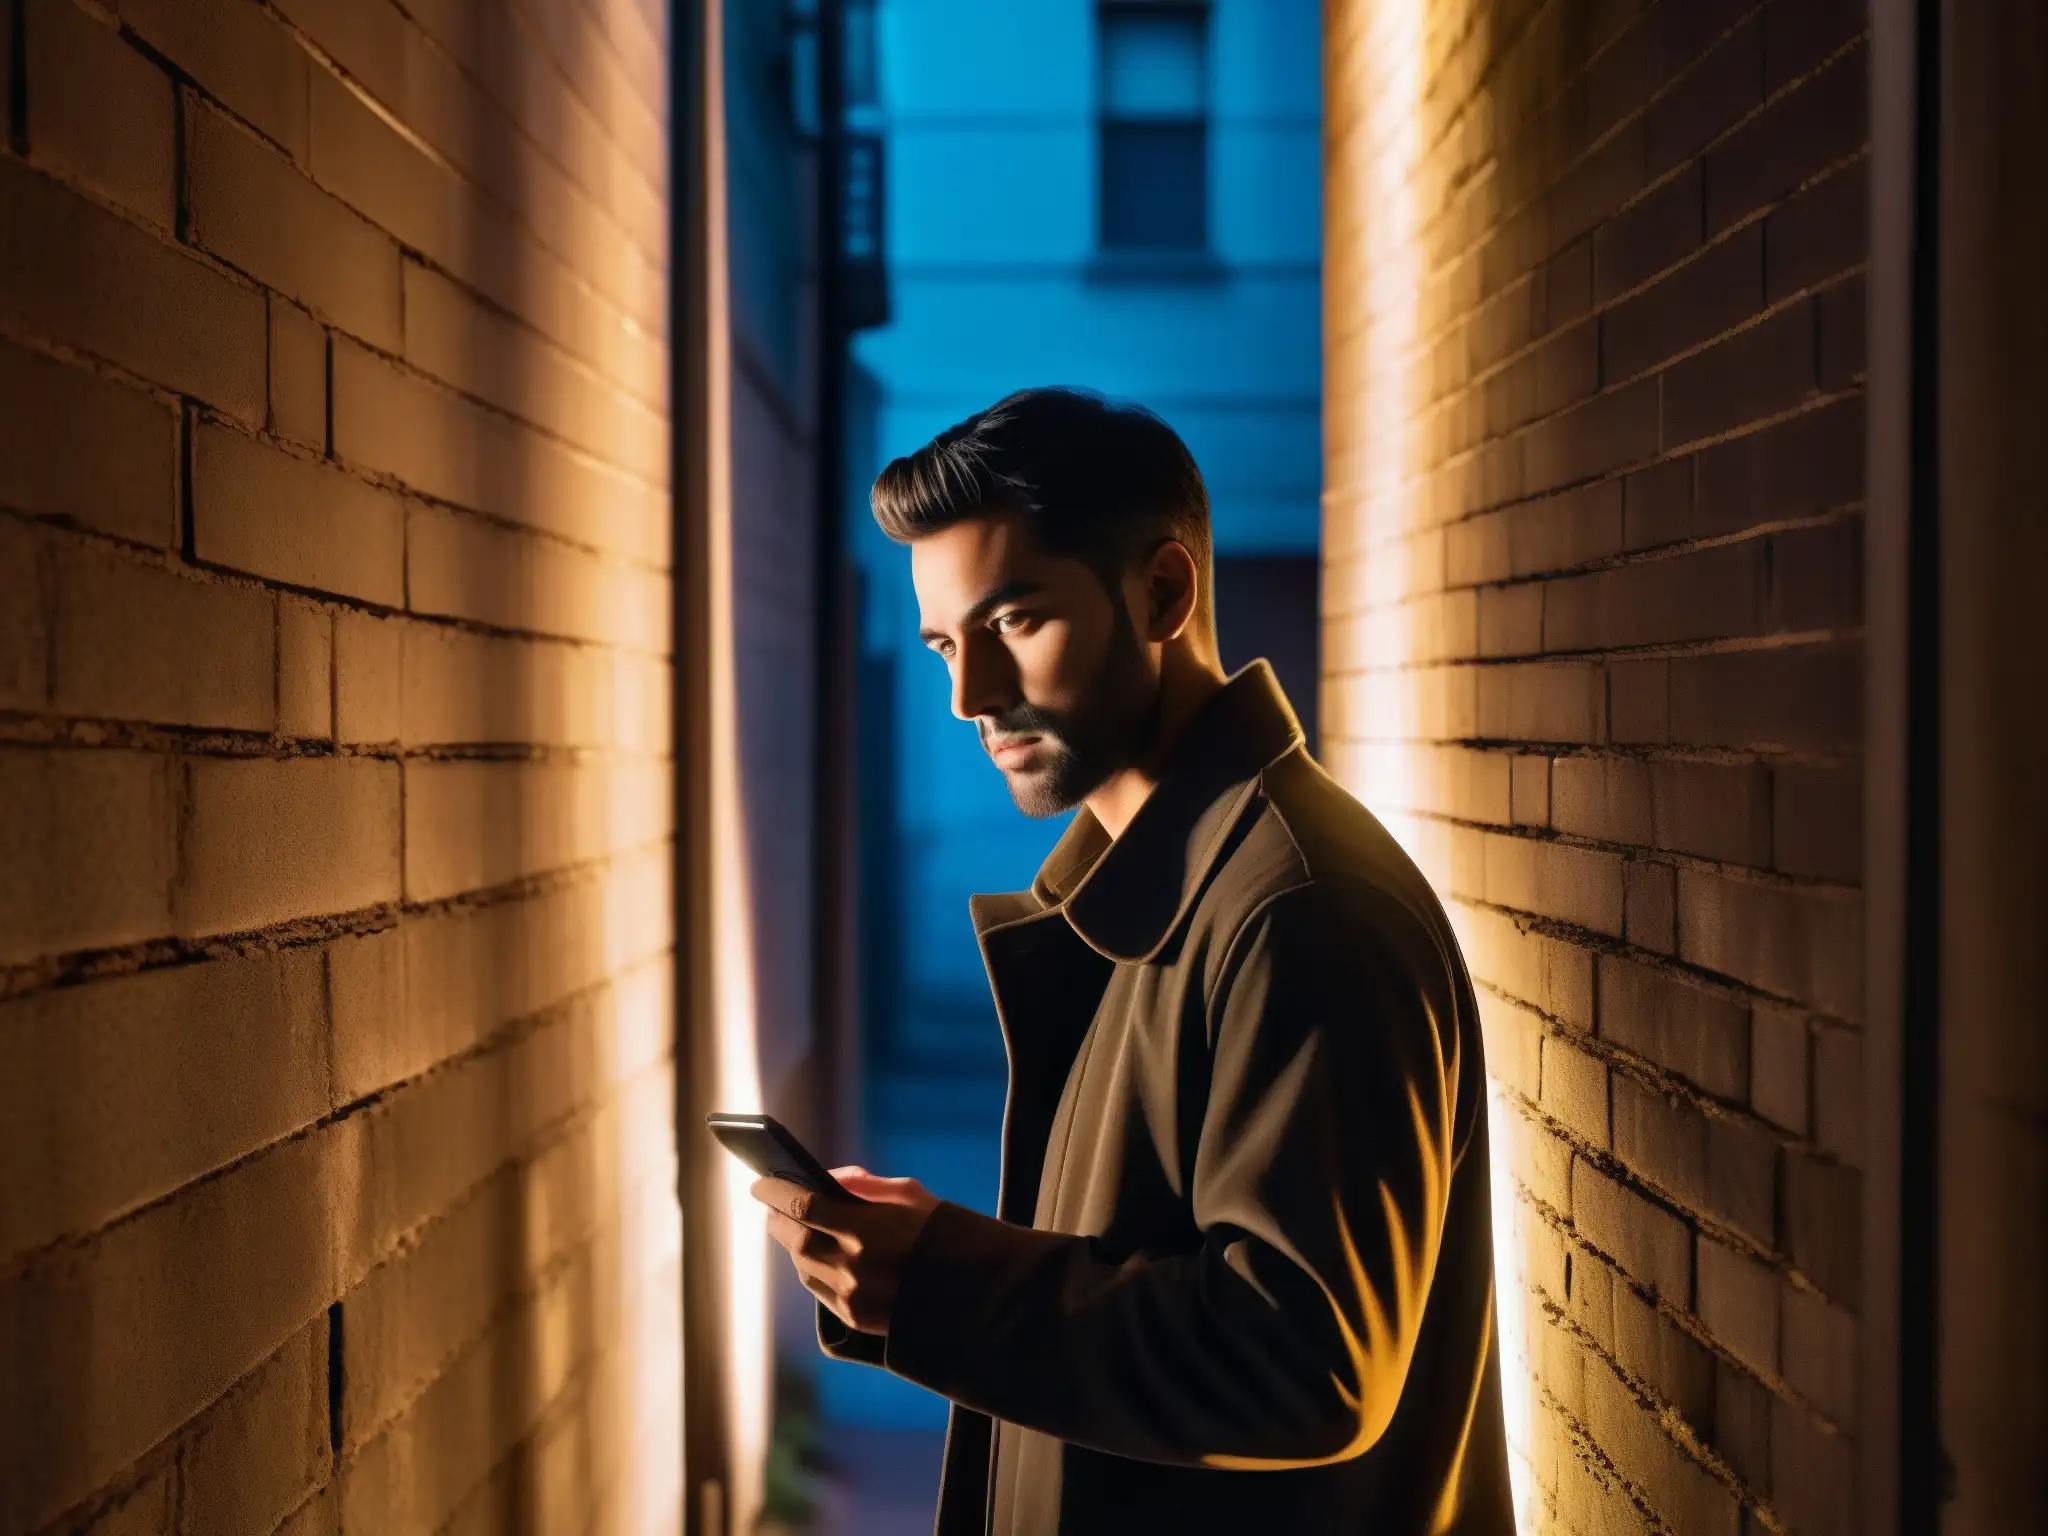 Un misterioso personaje en la oscuridad de un callejón, iluminado por un smartphone, conecta con leyendas urbanas dispositivos inteligentes